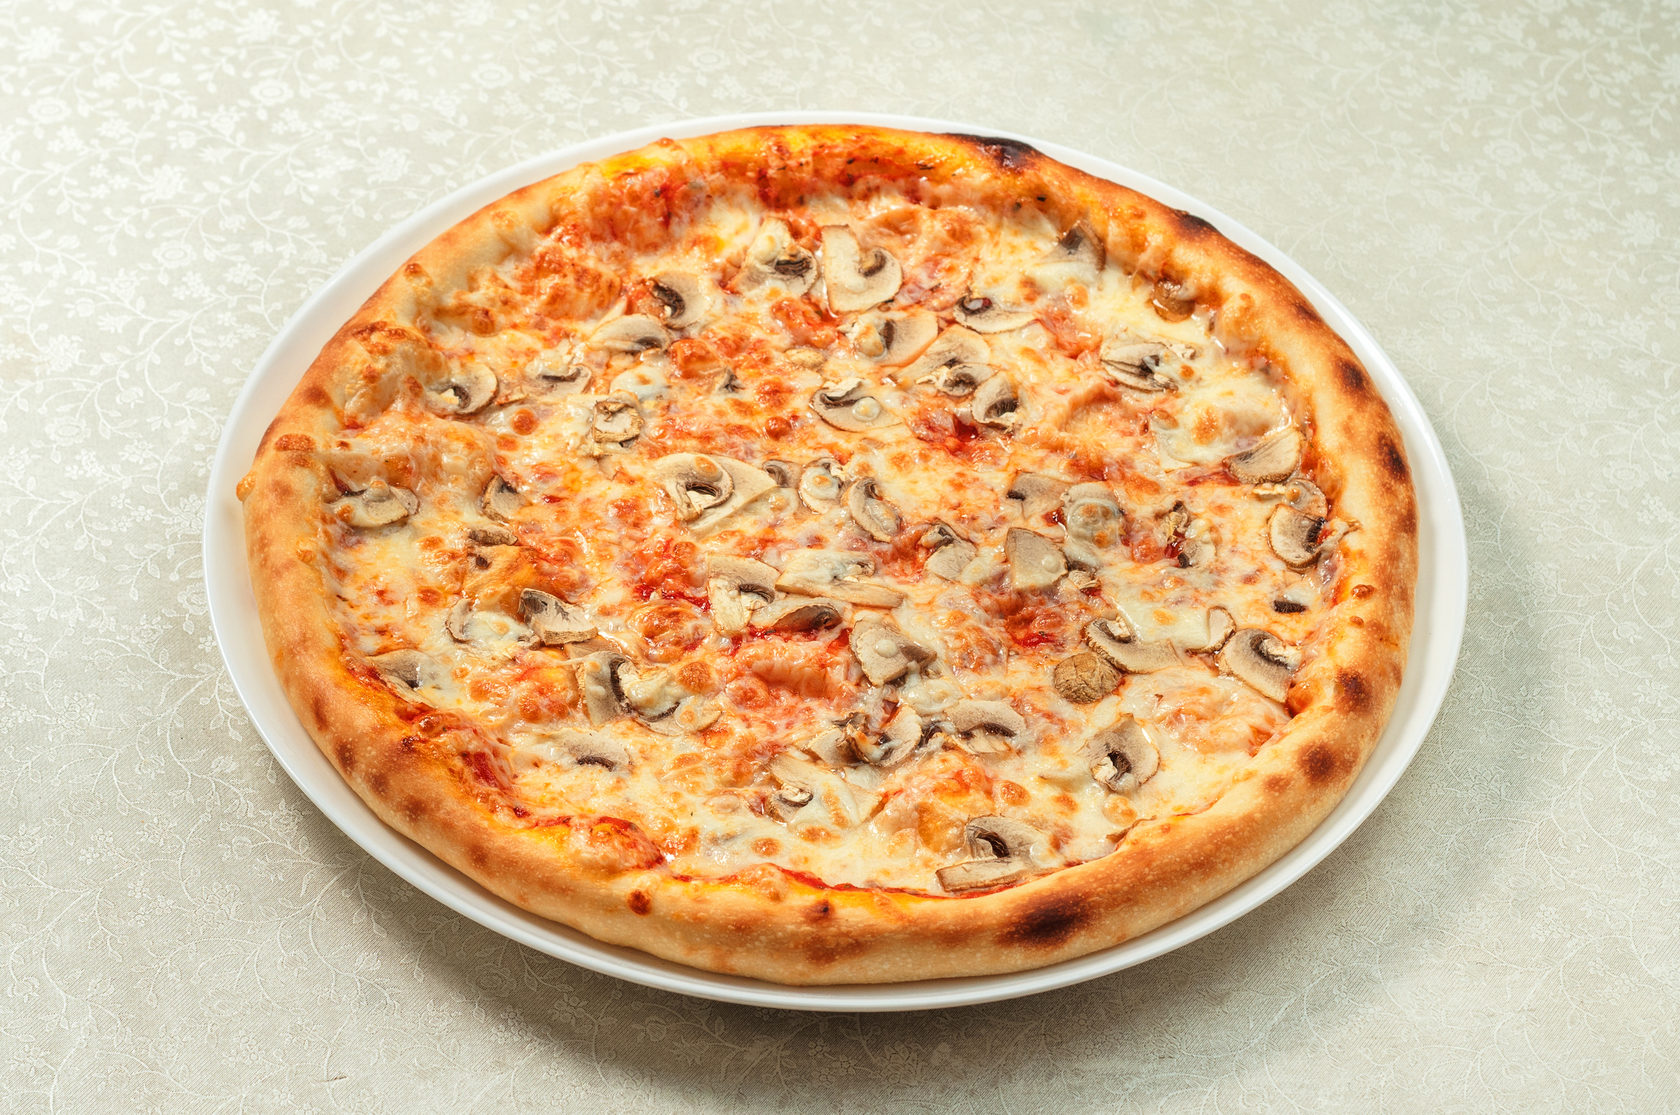 Села пицца. Пицца с курицей. Пицца с гречкой. Пицца 32 см. Пицца 32 см как выглядит.